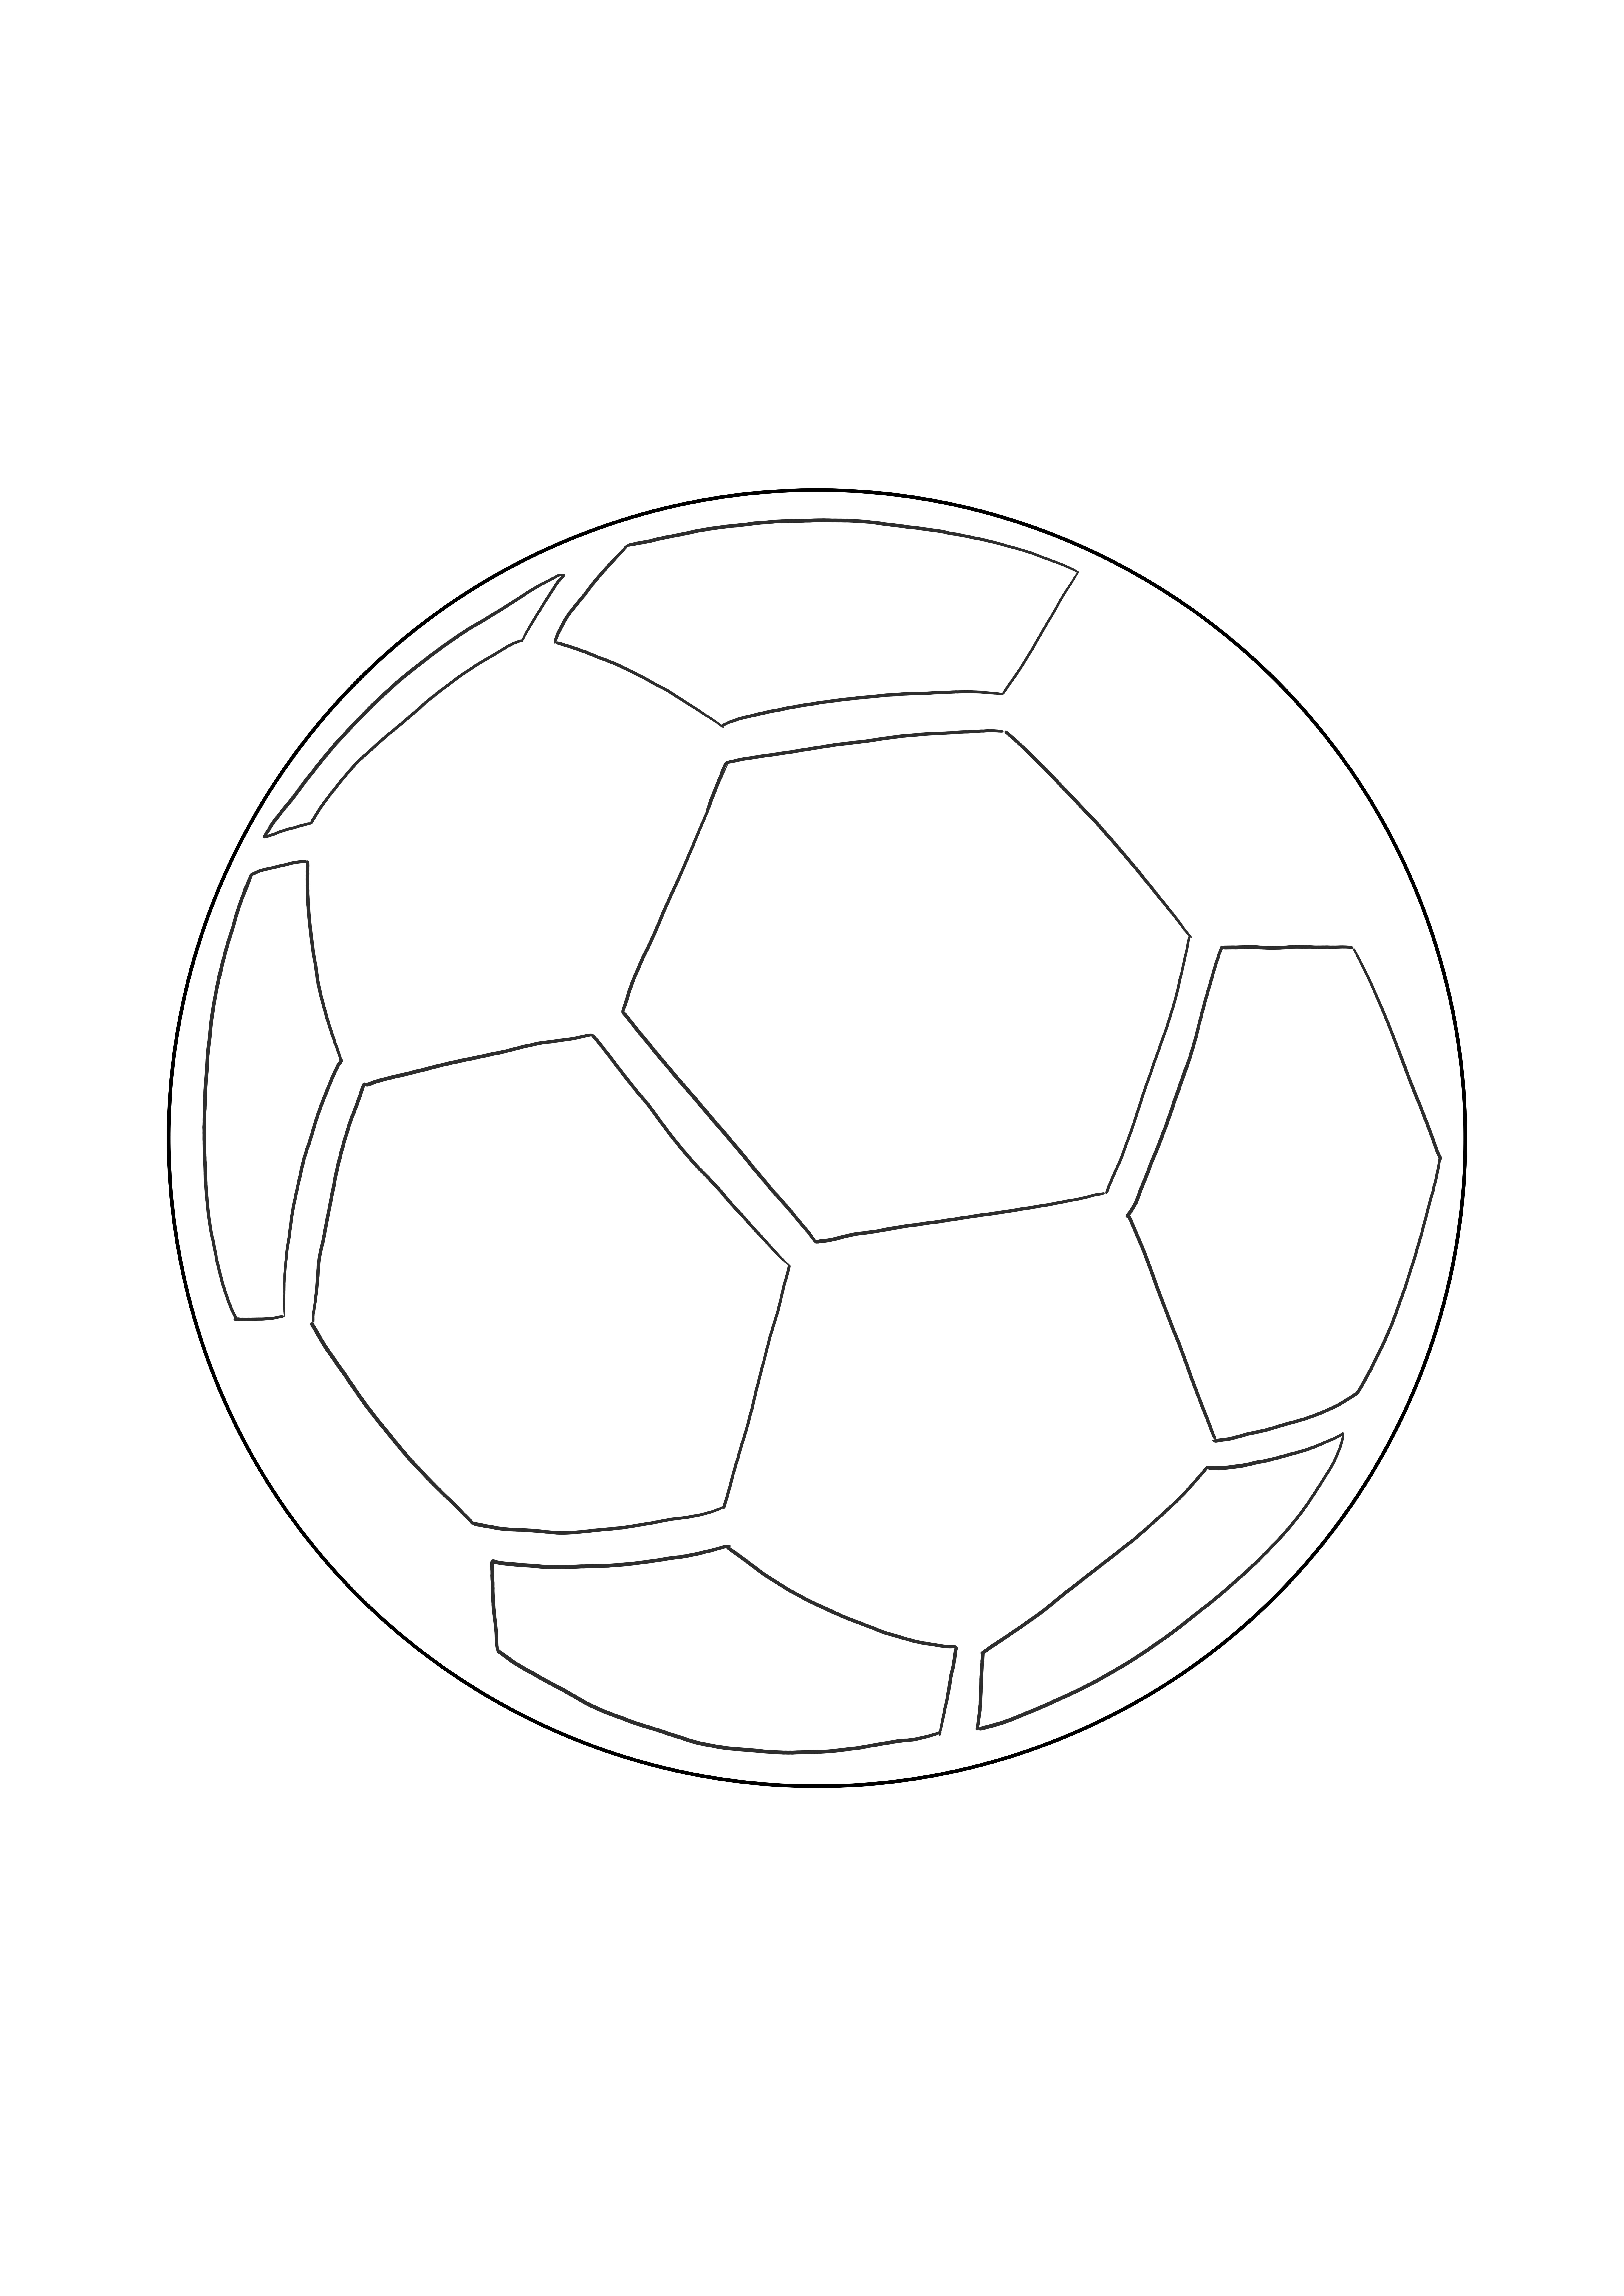 Egy futballlabda egyszerű színezése ingyenesen nyomtatható vagy letölthető kép